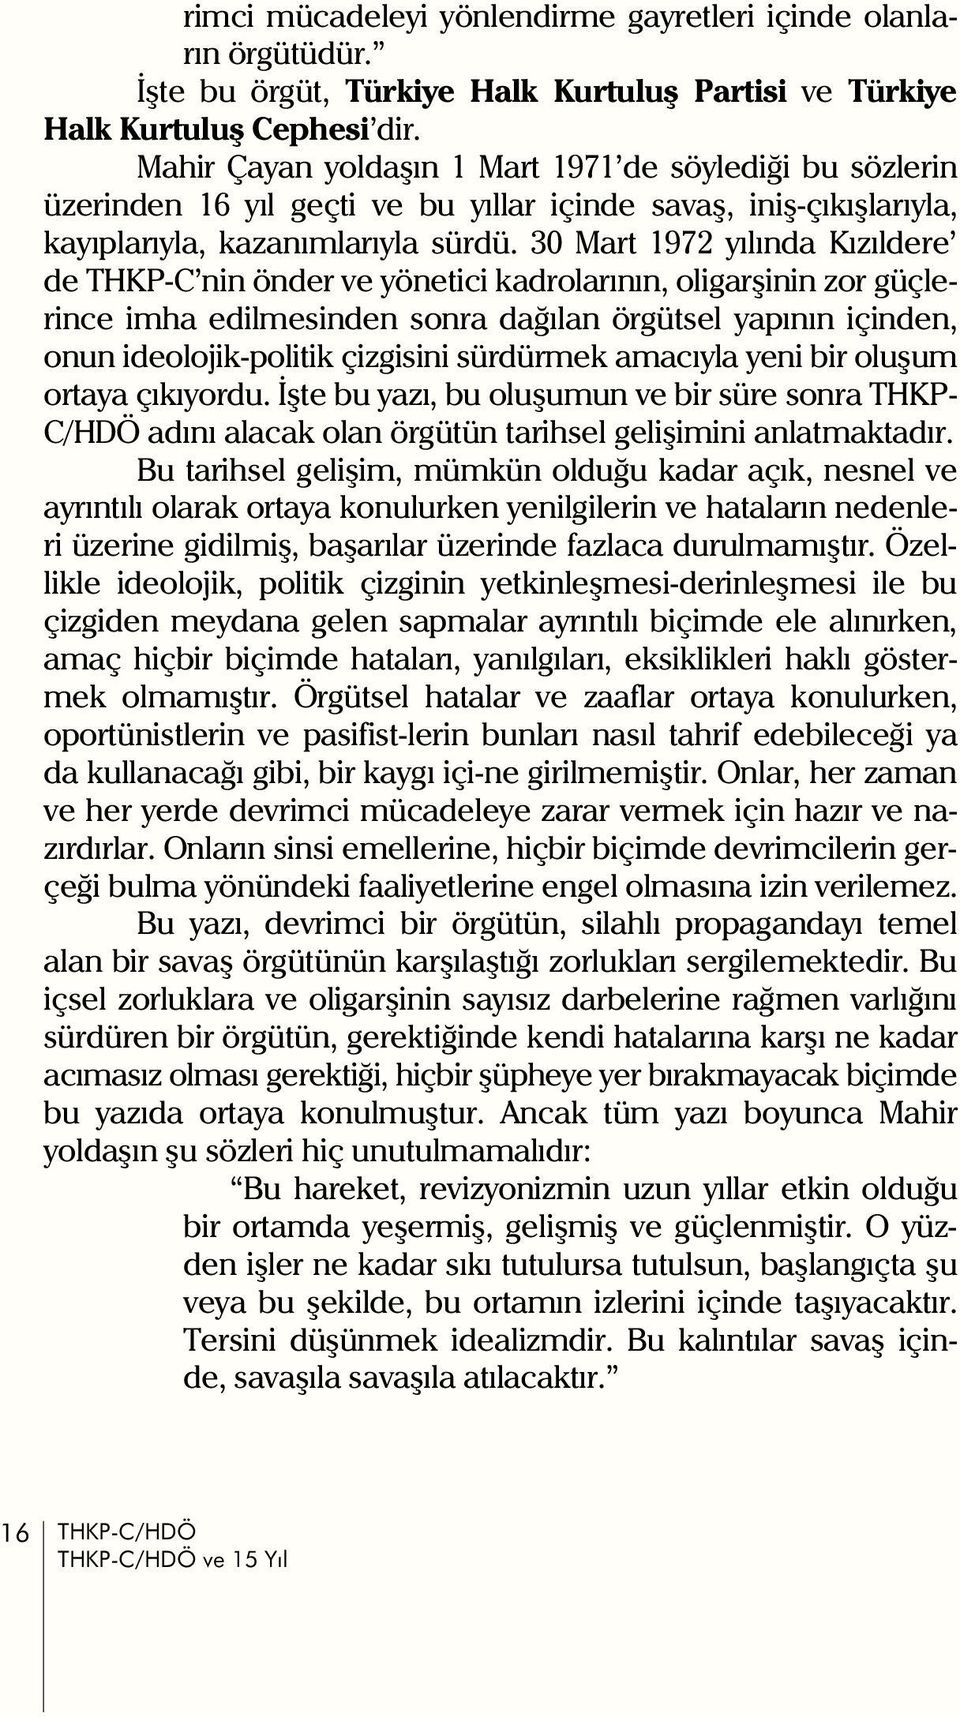 30 Mart 1972 yýlýnda Kýzýldere de THKP-C nin önder ve yönetici kadrolarýnýn, oligarþinin zor güçlerince imha edilmesinden sonra daðýlan örgütsel yapýnýn içinden, onun ideolojik-politik çizgisini